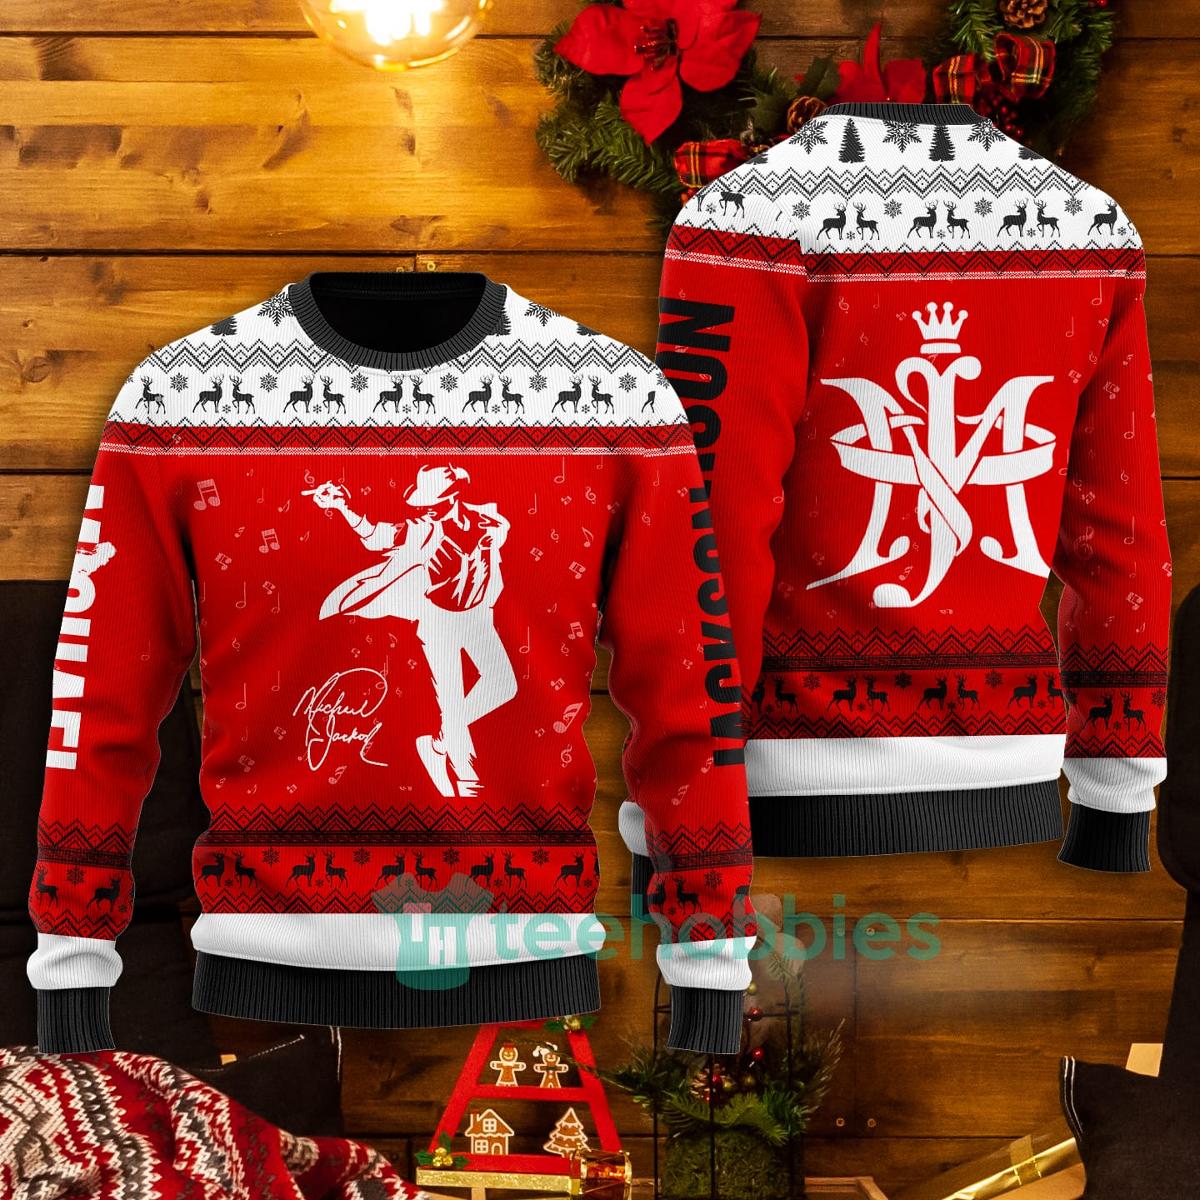 Michael Jackson Ugly Christmas Sweater